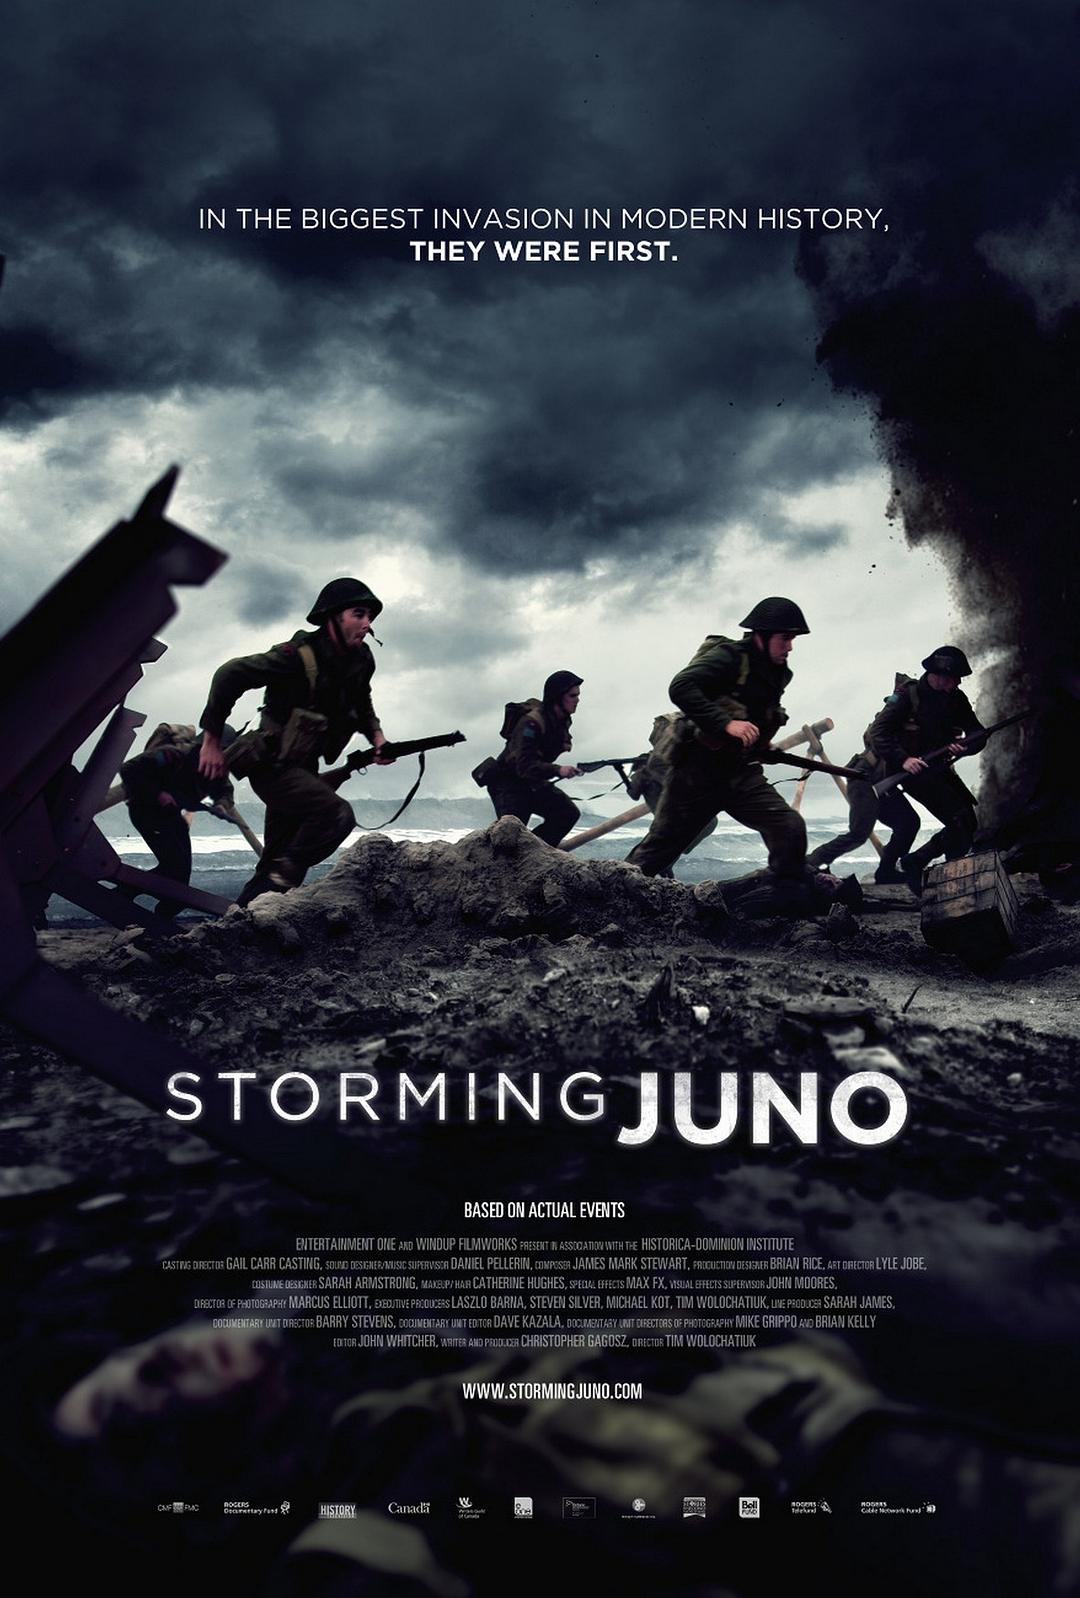 登陆朱诺滩/攻坚朱诺 Storming.Juno.2010.1080p.BluRay.REMUX.AVC.DTS-HD.MA.2.0-FGT 15.96GB-1.png